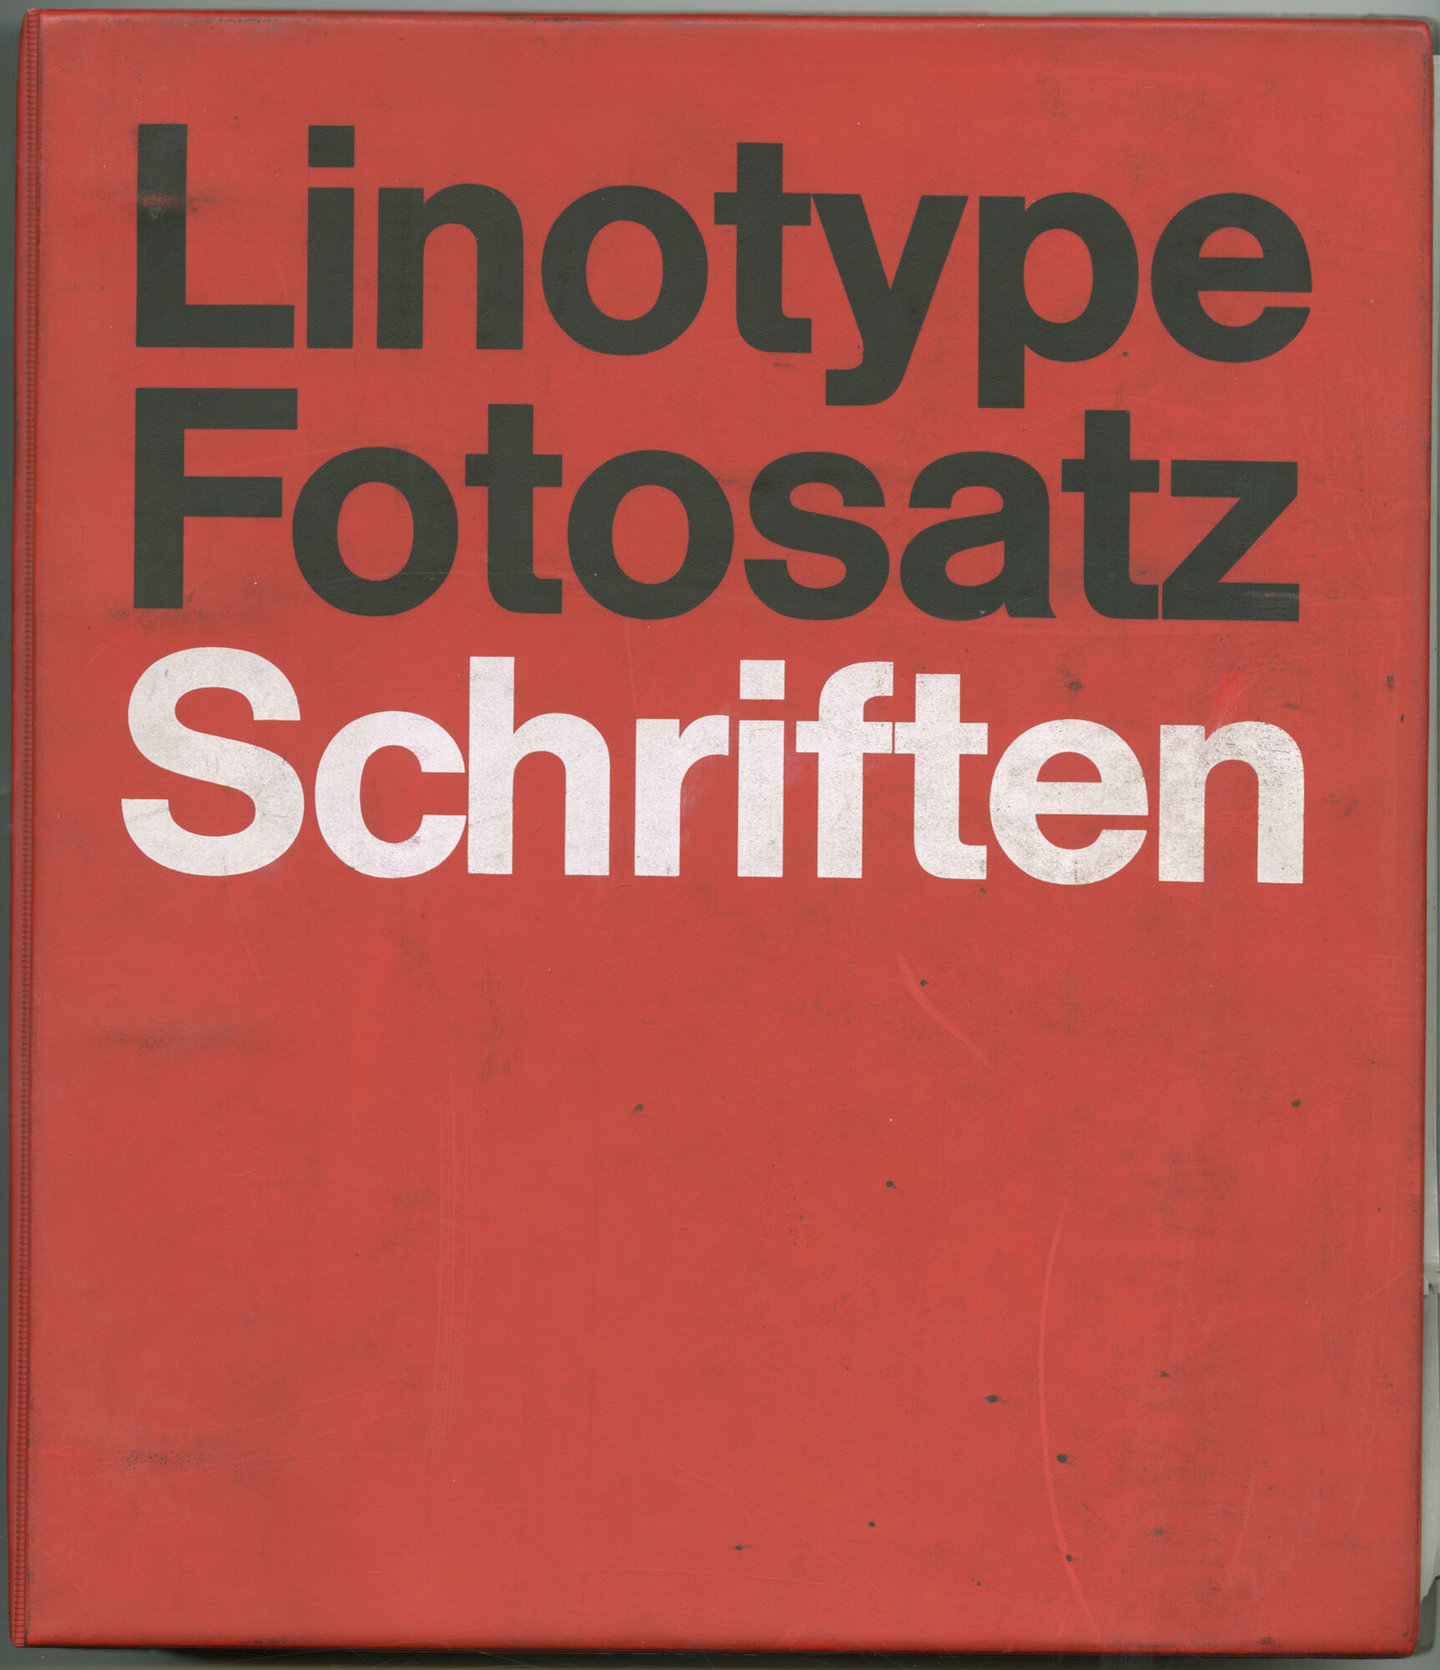 Letterproef met lettertypes voor fotozetten van Linotype